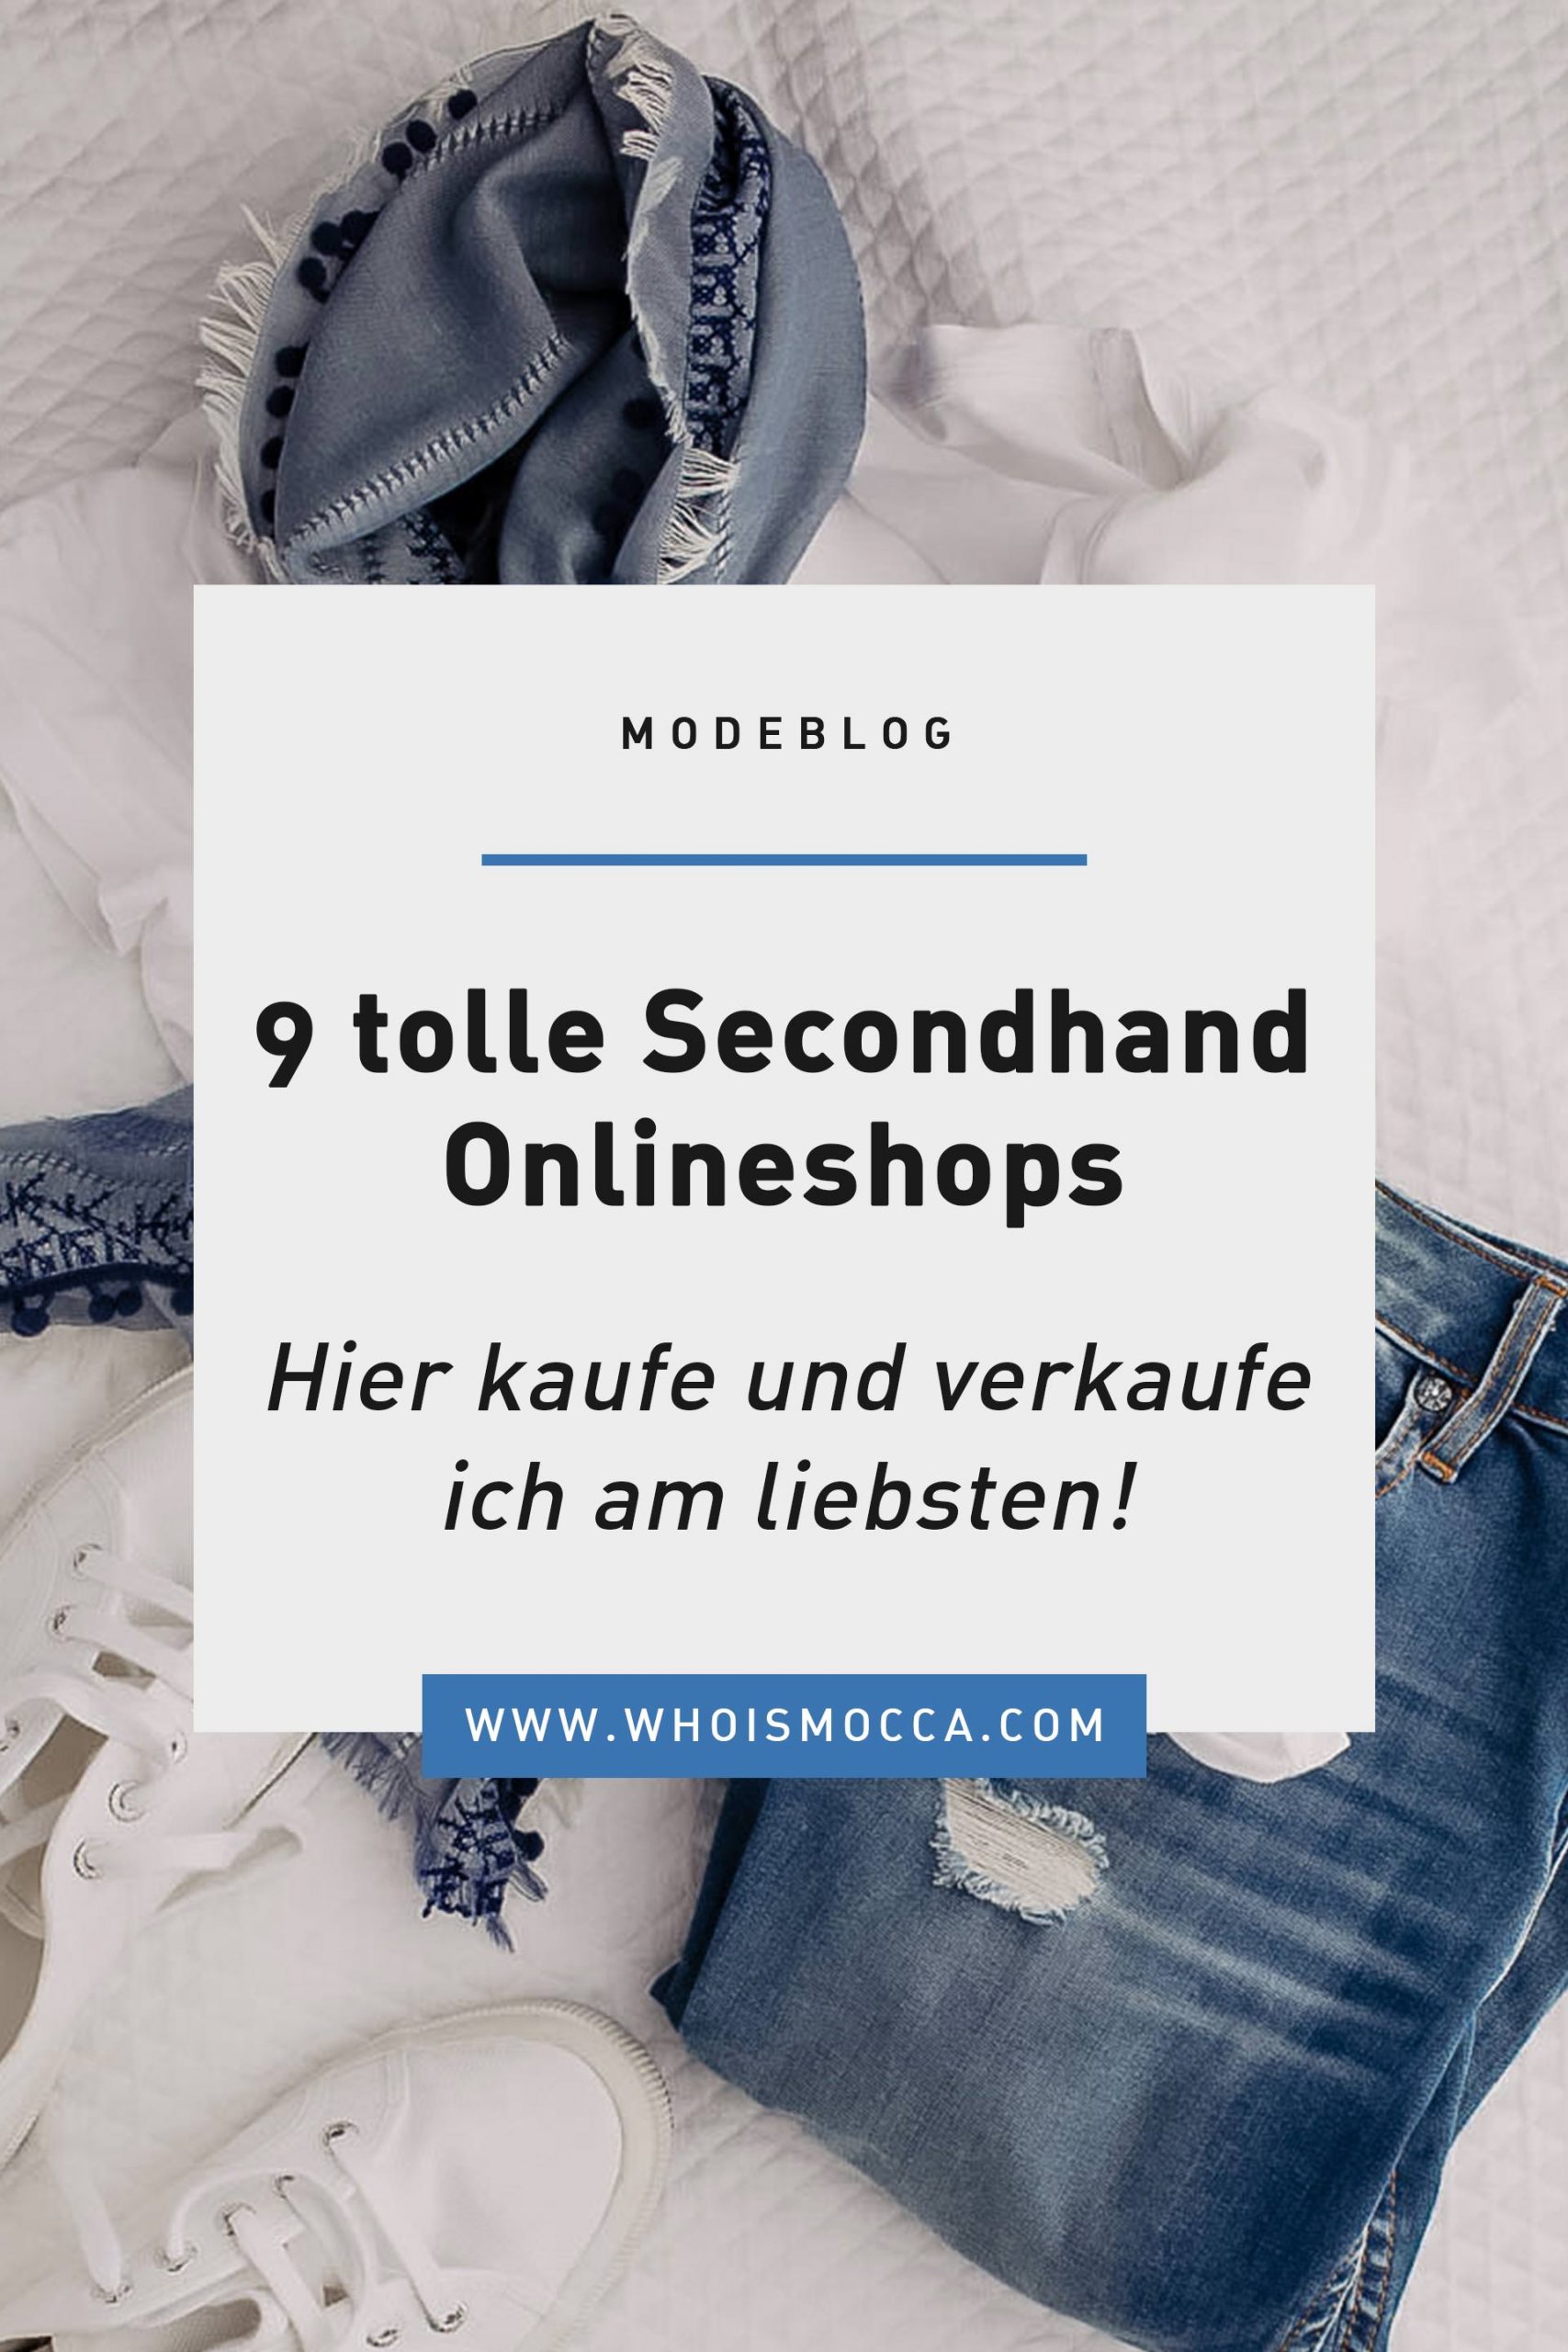 Am Modeblog stelle ich dir heute 9 tolle Secondhand Onlineshops vor. Ideal, wenn du Kleidung, Schuhe und Accessoires kaufen oder verkaufen möchtest. www.whoismocca.com